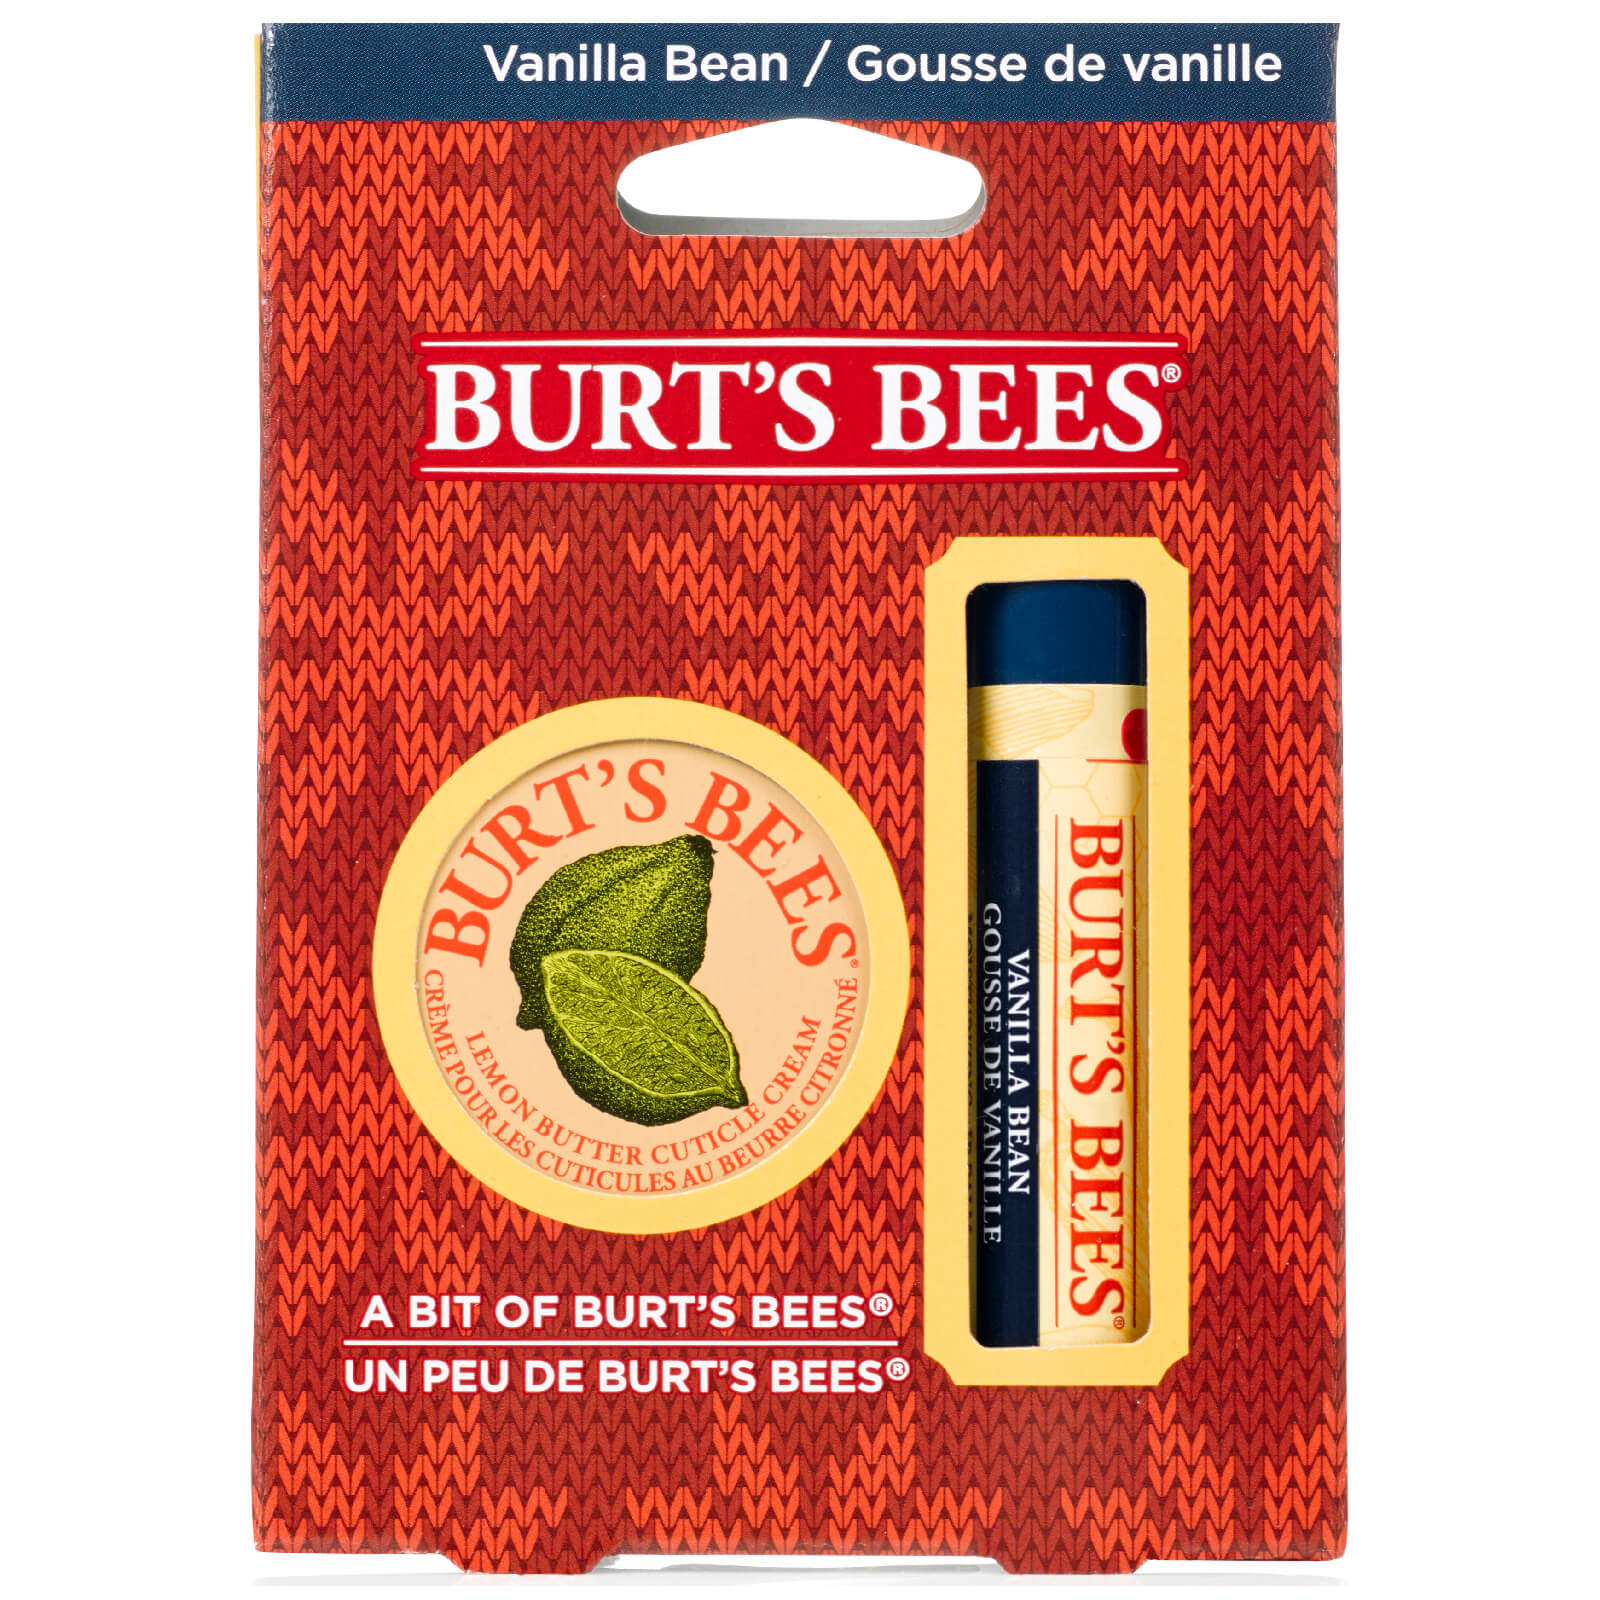 Burt's Bees Bit of Burt's Vanilla Bean Gift Set